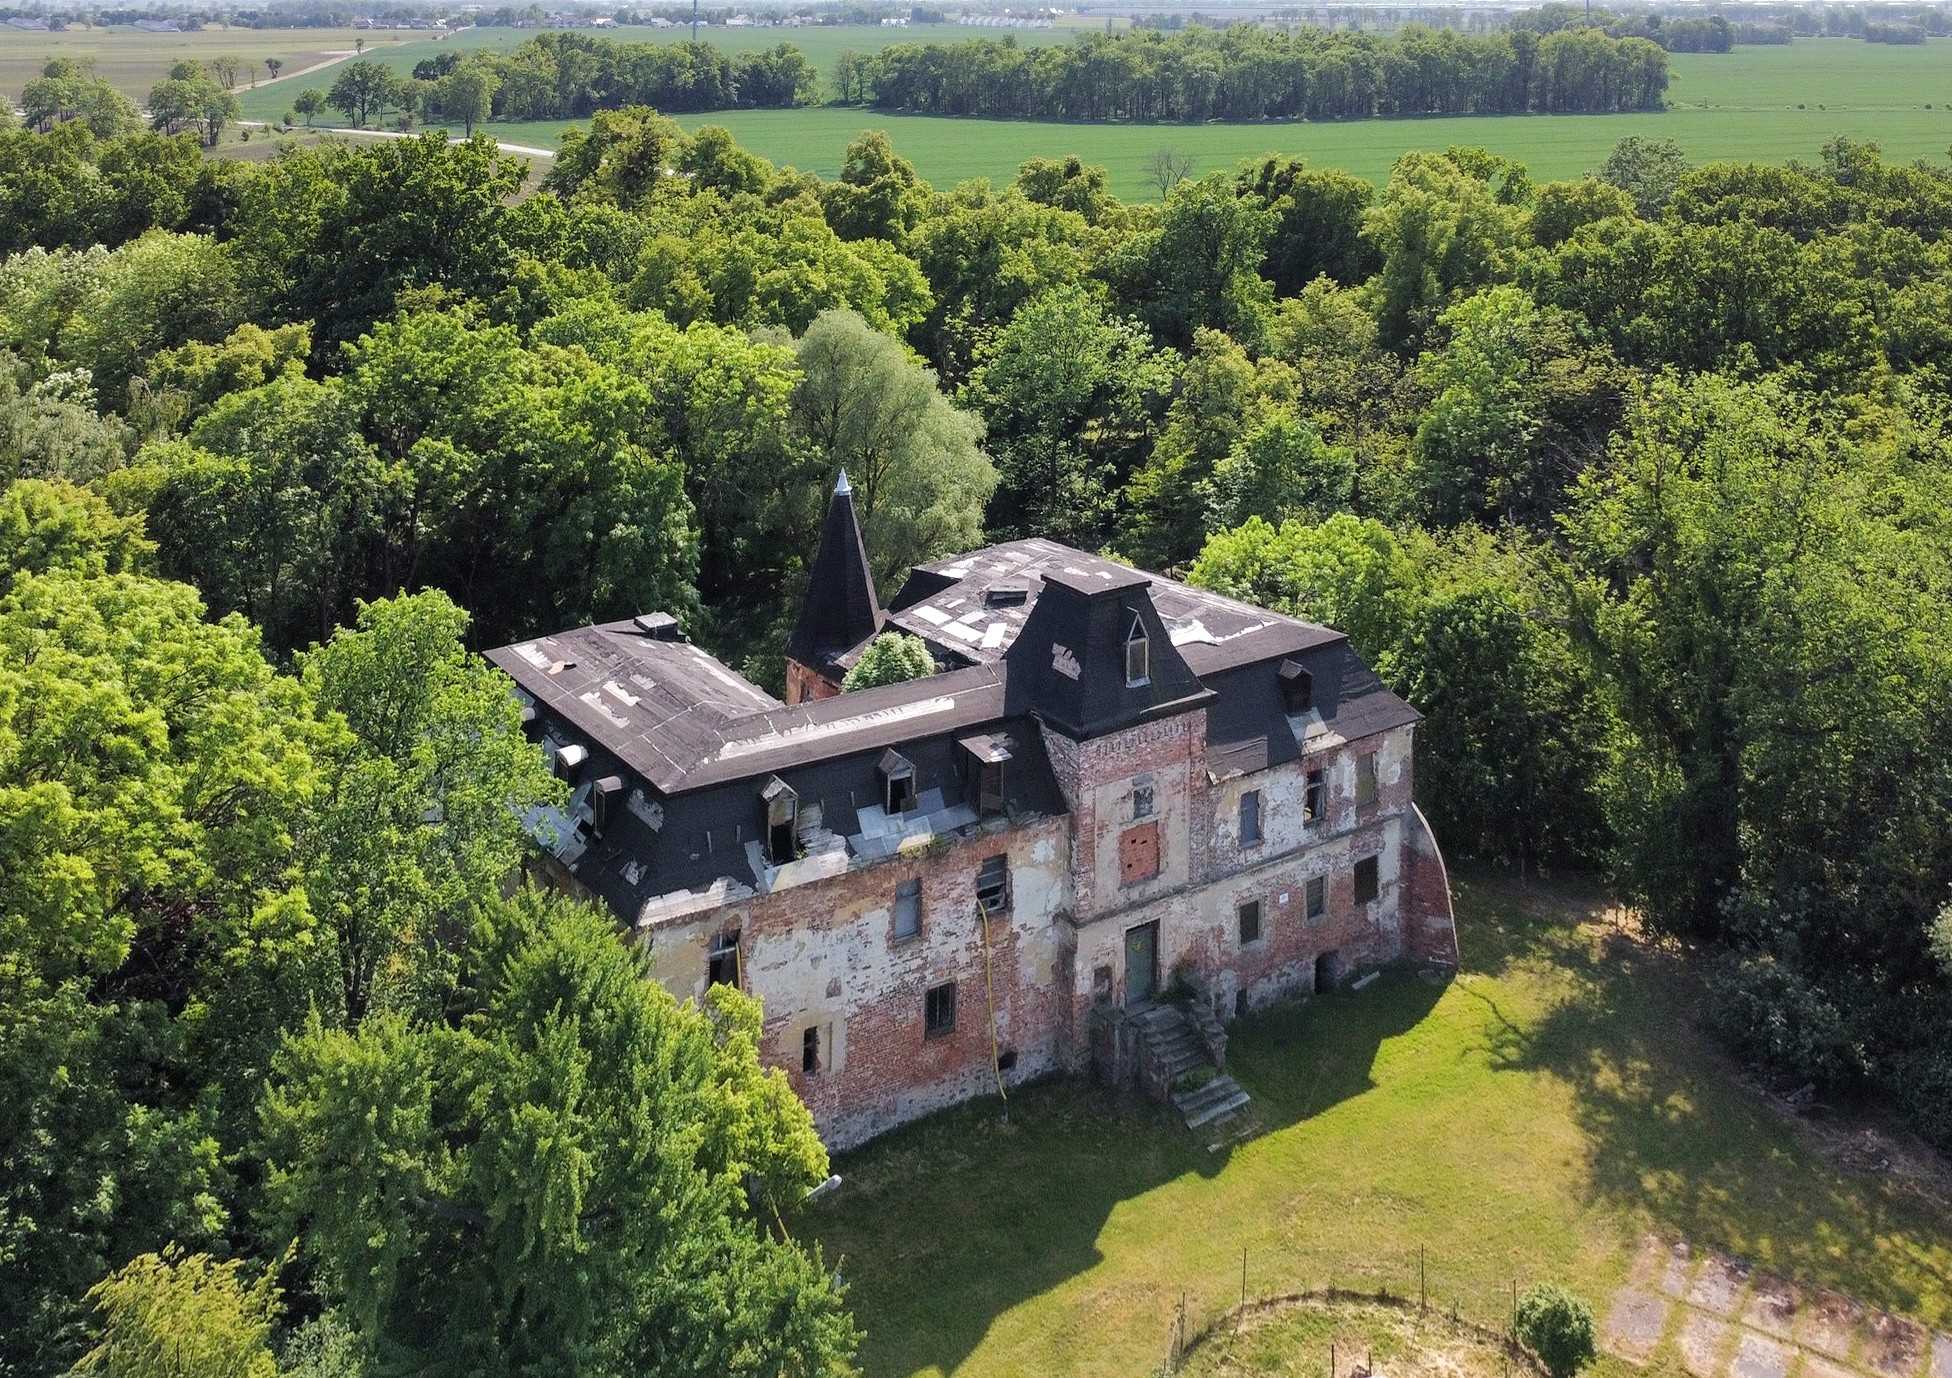 Images Renovatiebehoevend kasteel met klein park Wrocław, Polen